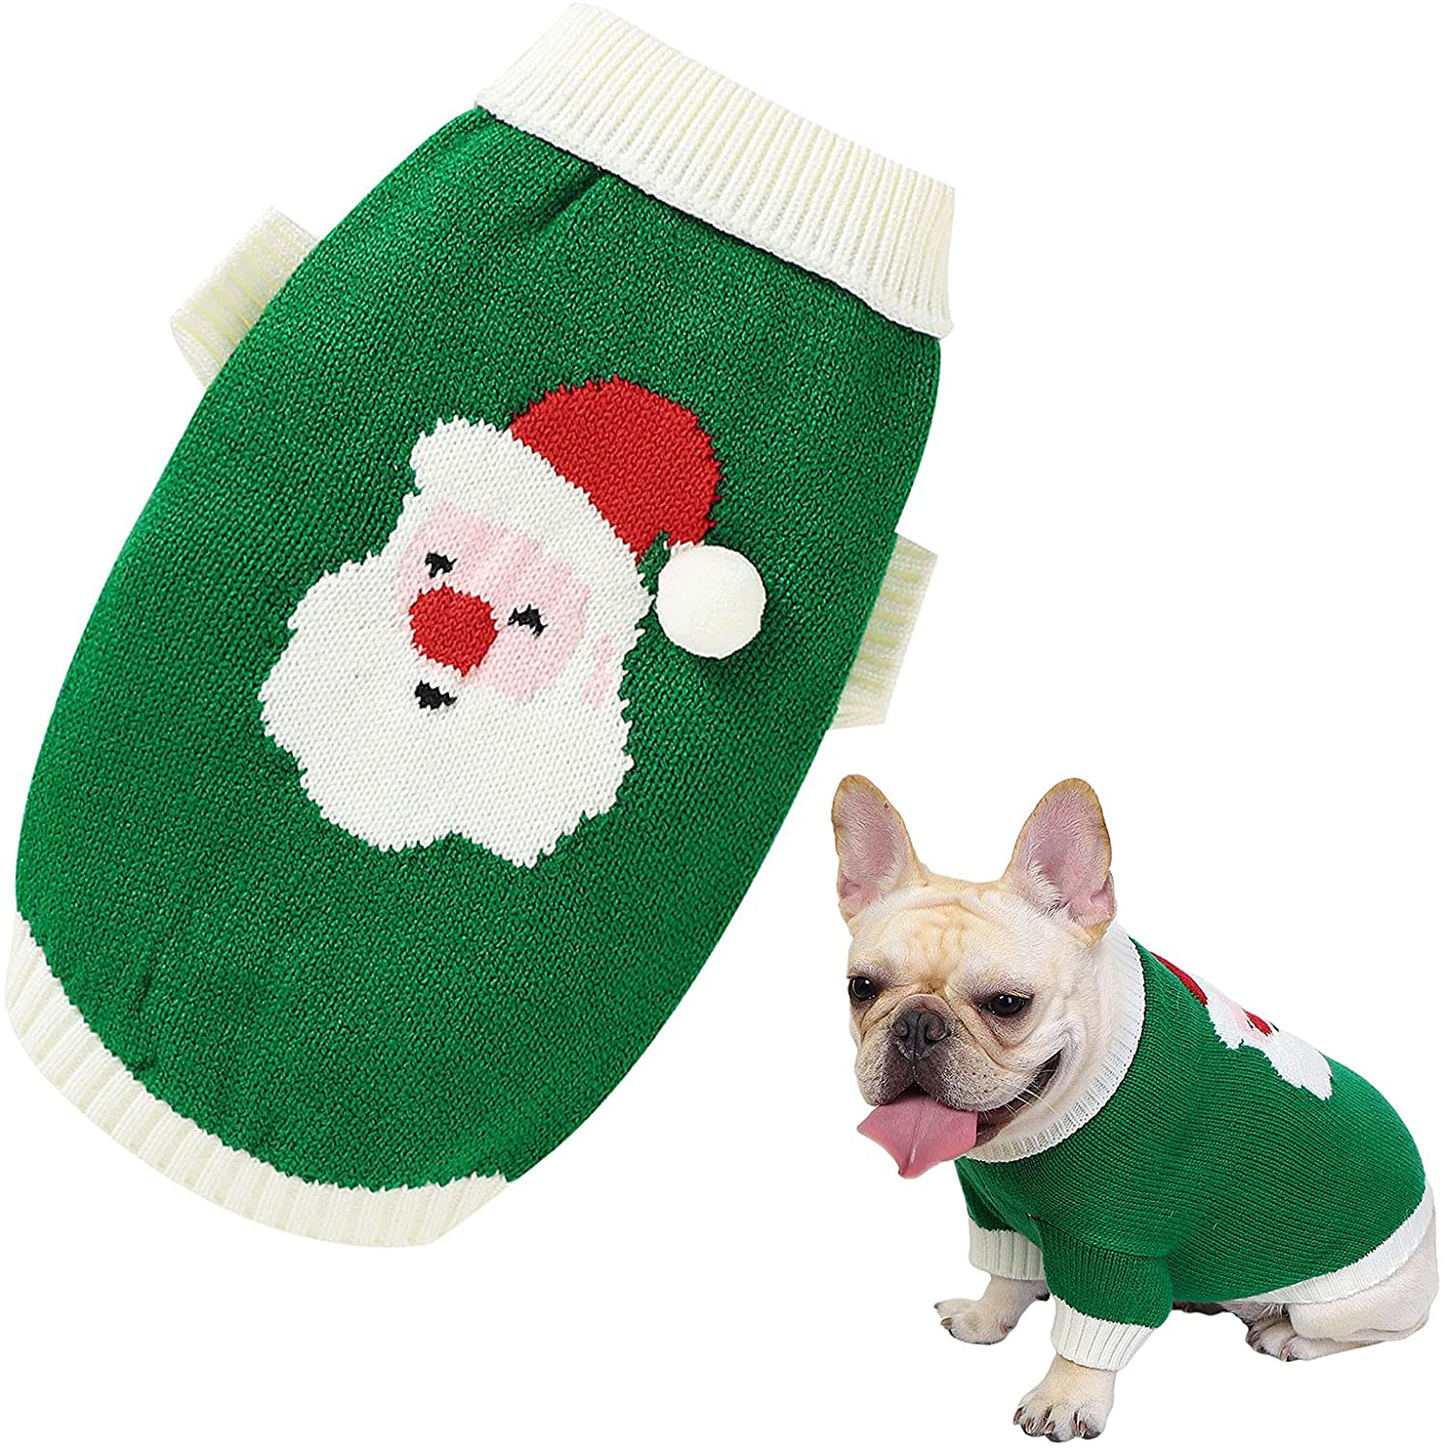 Christmas Dog Sweater Cartoon Reindeer Pet Sweaterssanta Claus Knitten Sweater Xmas Winter Knitwear Warm Clothes Animals & Pet Supplies > Pet Supplies > Dog Supplies > Dog Apparel Banooo Green Medium 